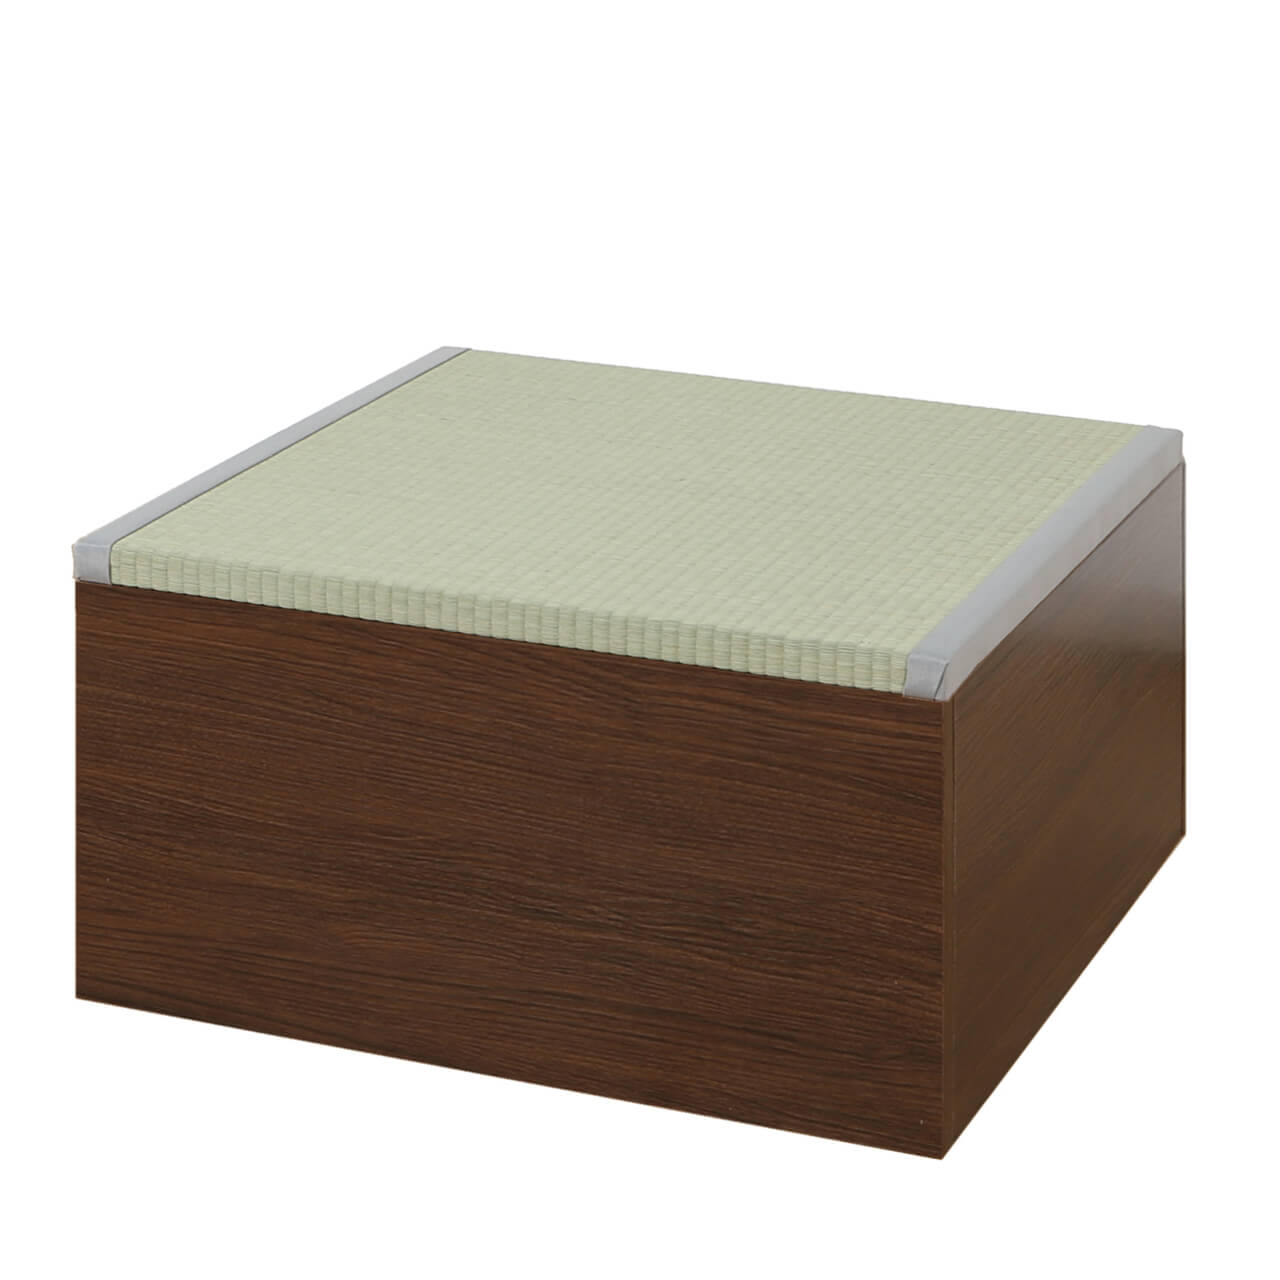 畳収納ボックス ロータイプ 約60×60×33cm 日本製 い草 畳ボックス 小上がり畳 畳スツール...